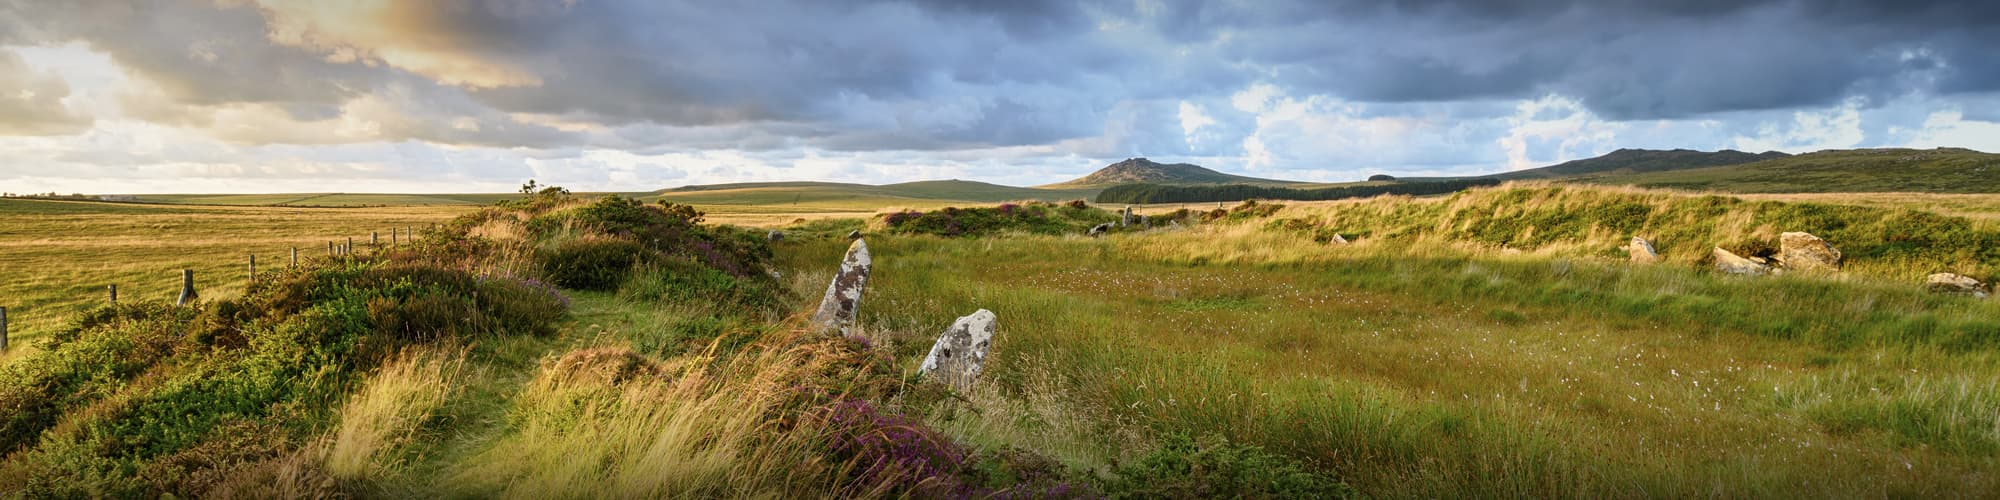 Randonnée dans les Iles Anglo-normandes : circuit, trek et voyage © Helen Hotson/iStock